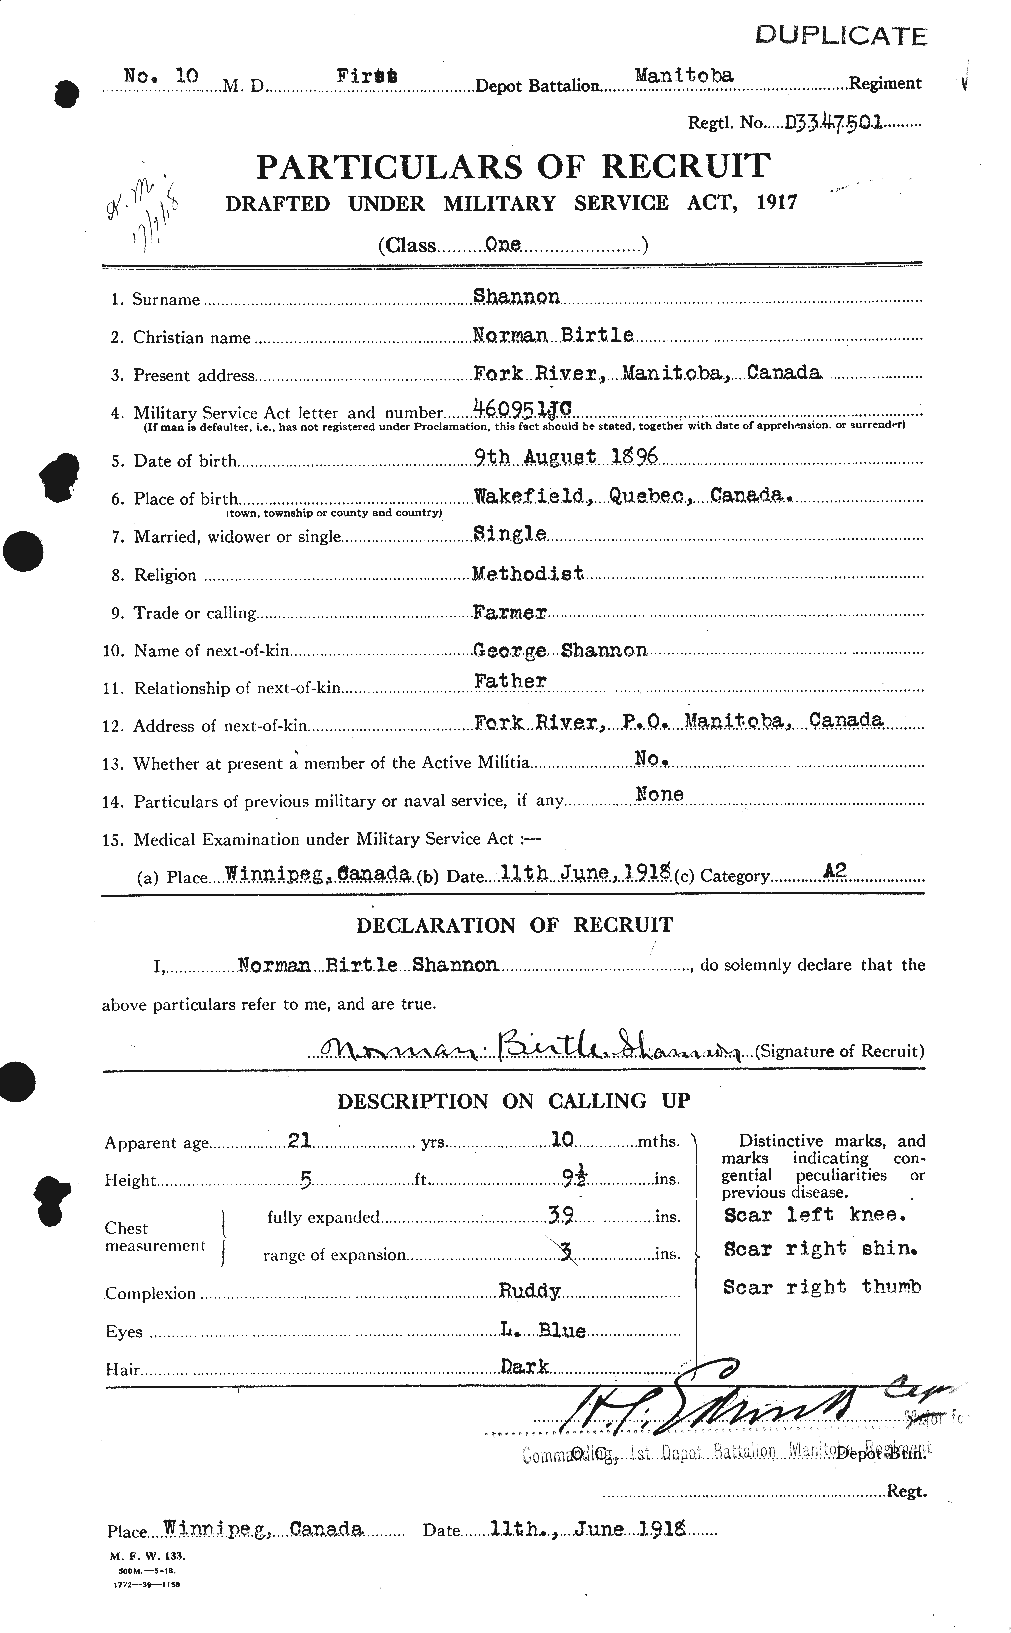 Dossiers du Personnel de la Première Guerre mondiale - CEC 088437a